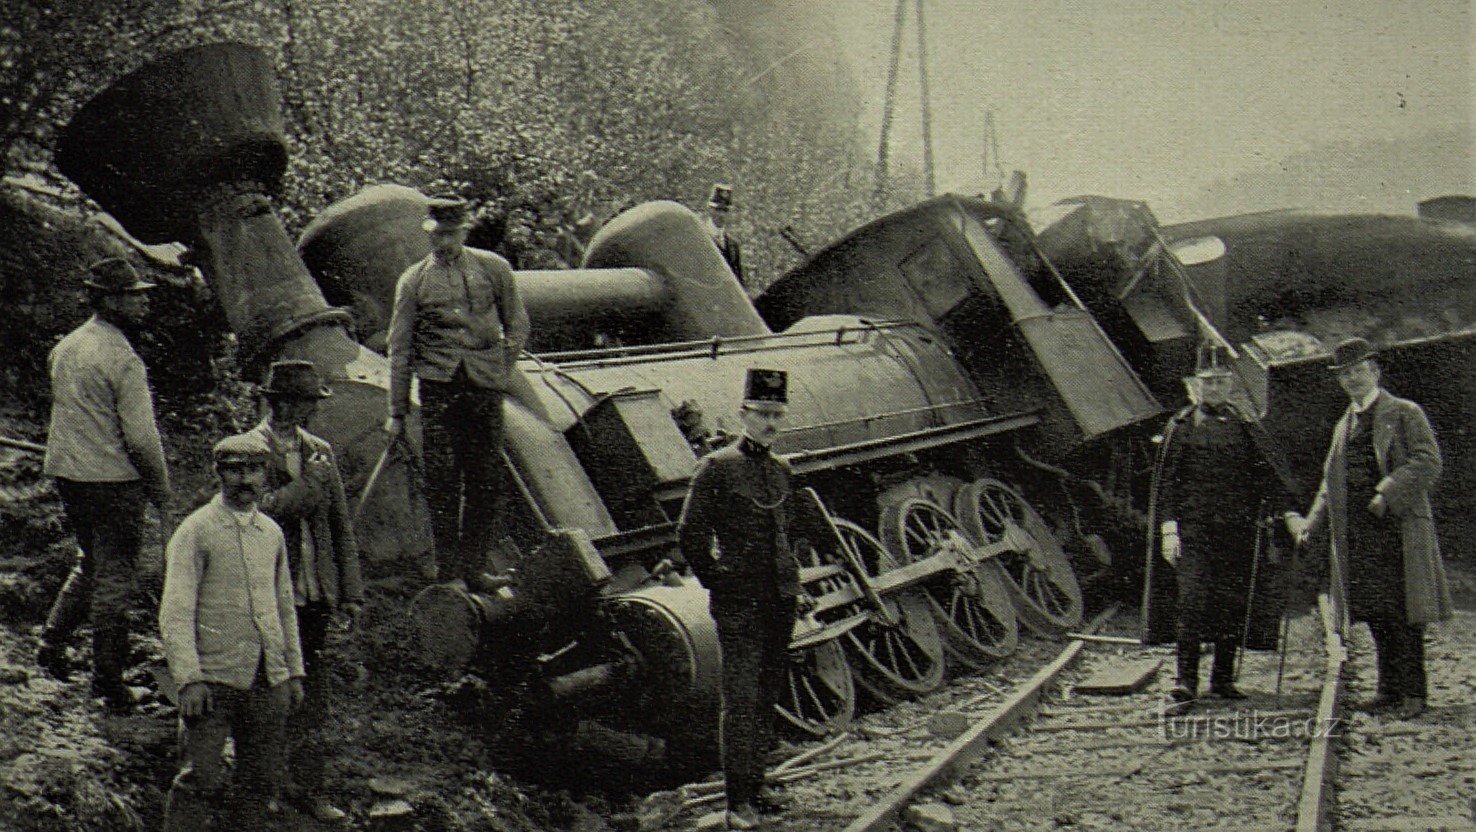 Brandýs nad Orlicí での鉄道事故 (4.5.1911 年 XNUMX 月 XNUMX 日)